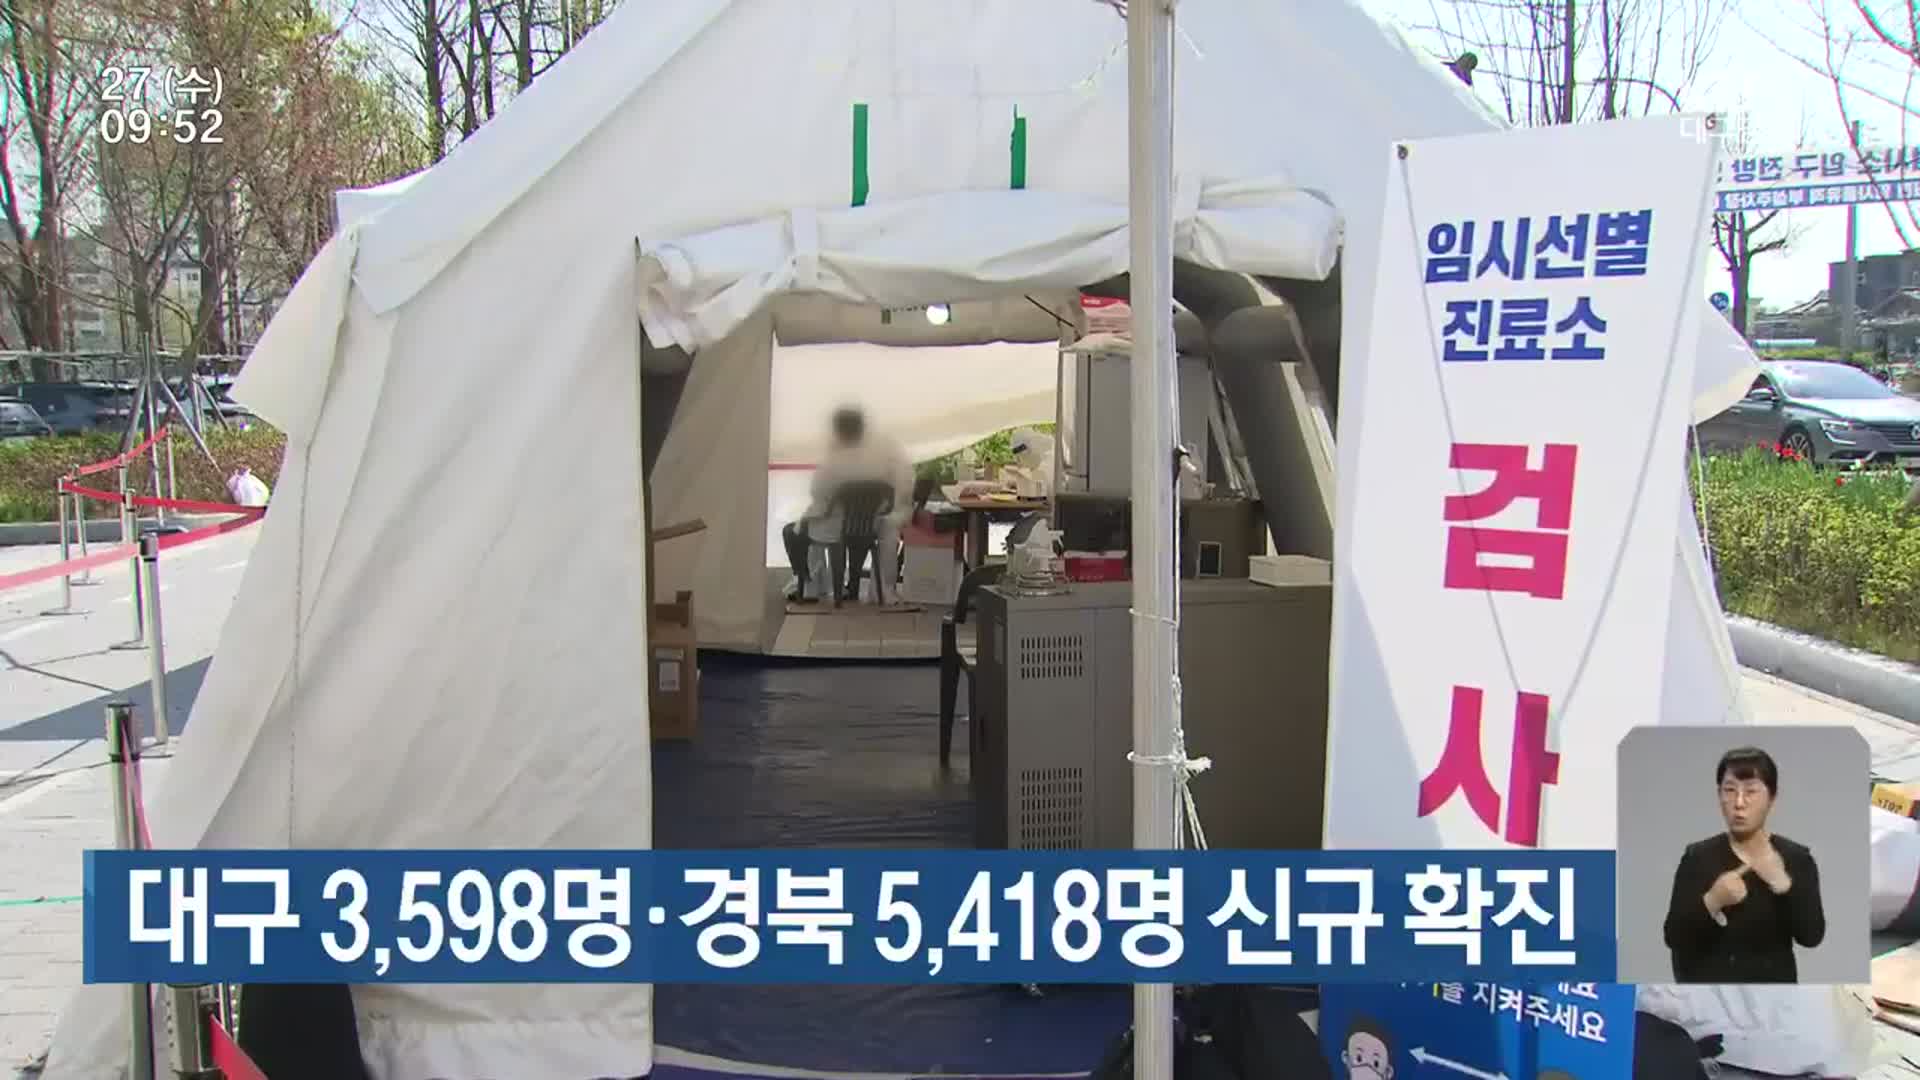 대구 3,598명·경북 5,418명 신규 확진